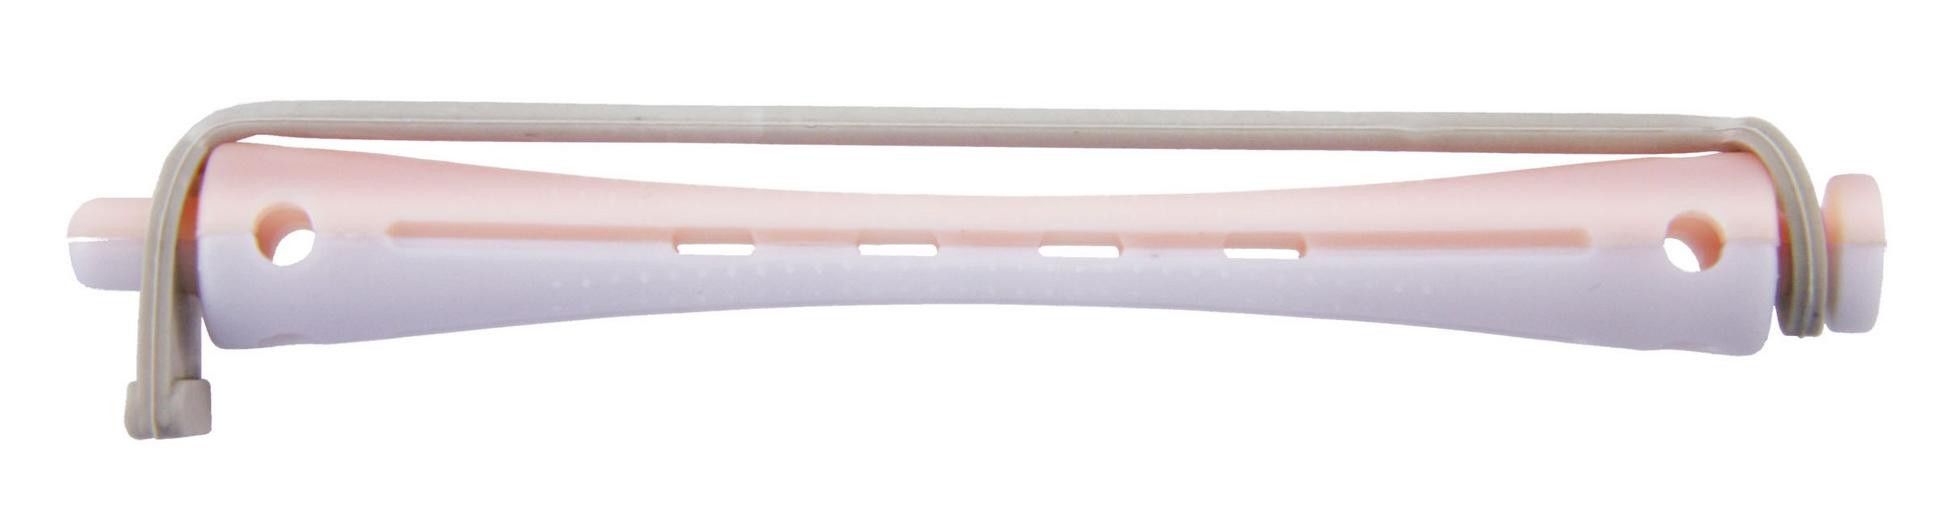 Comair Permanentwikkels lang wit/roze 7mm Wit/roze 12 stuks